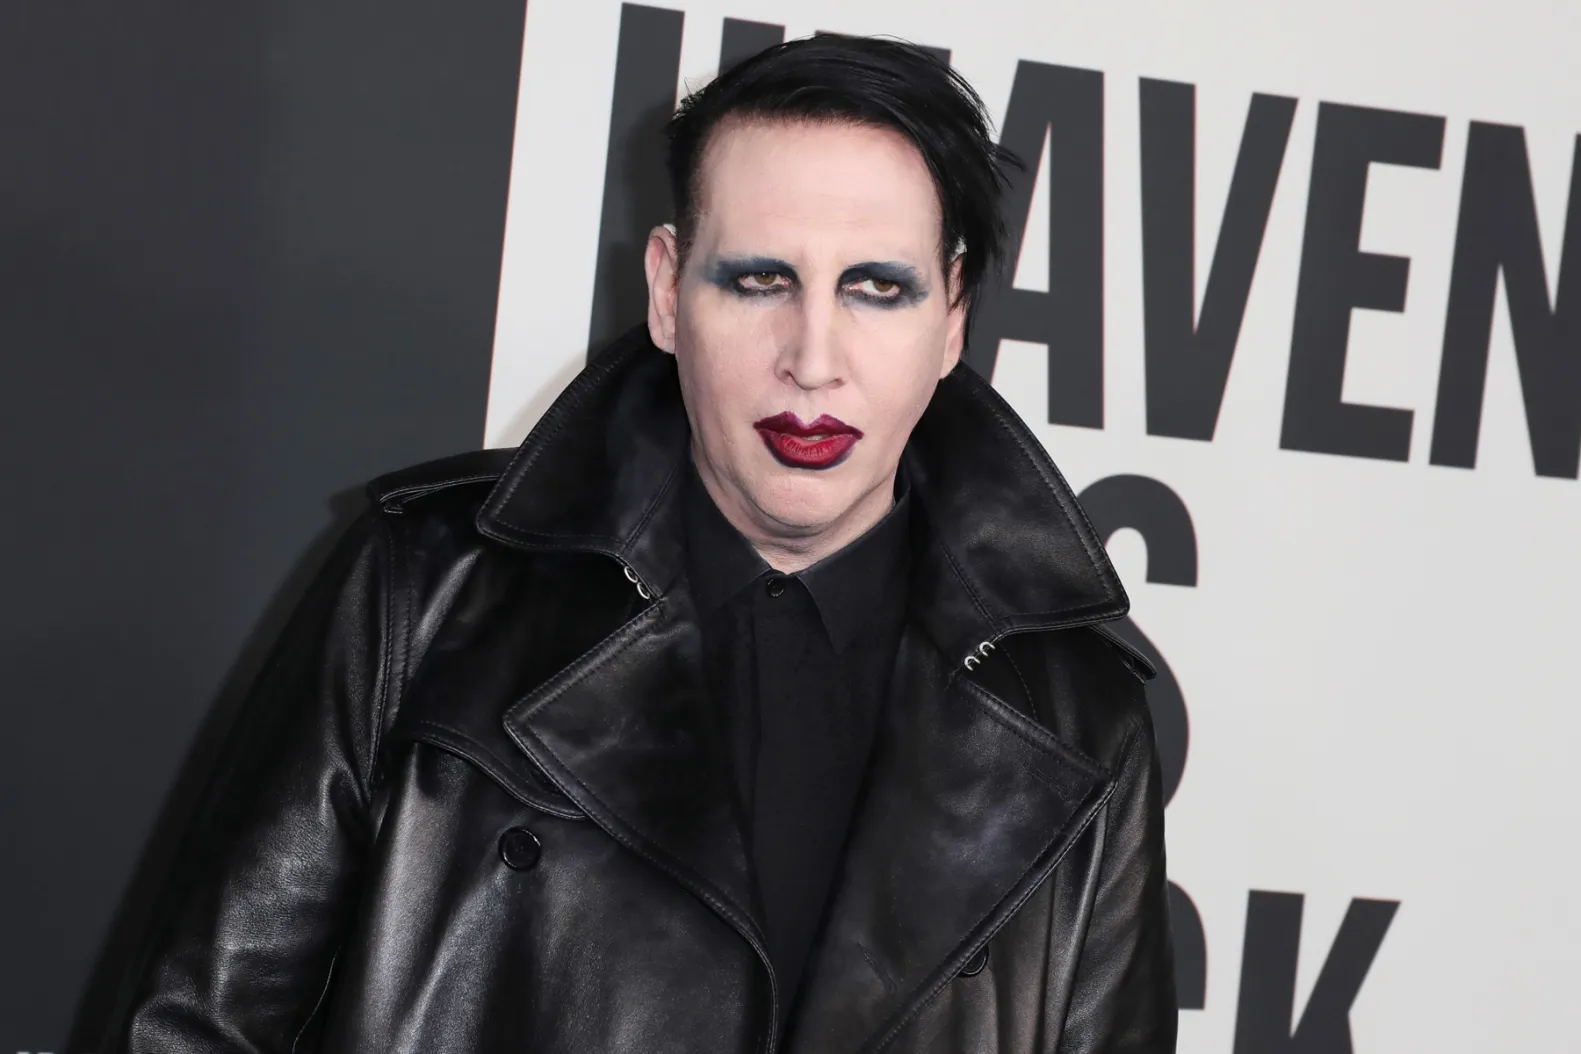 Les ennuis judiciaires de Marilyn Manson se poursuivent après l’annonce de son retour sur scène